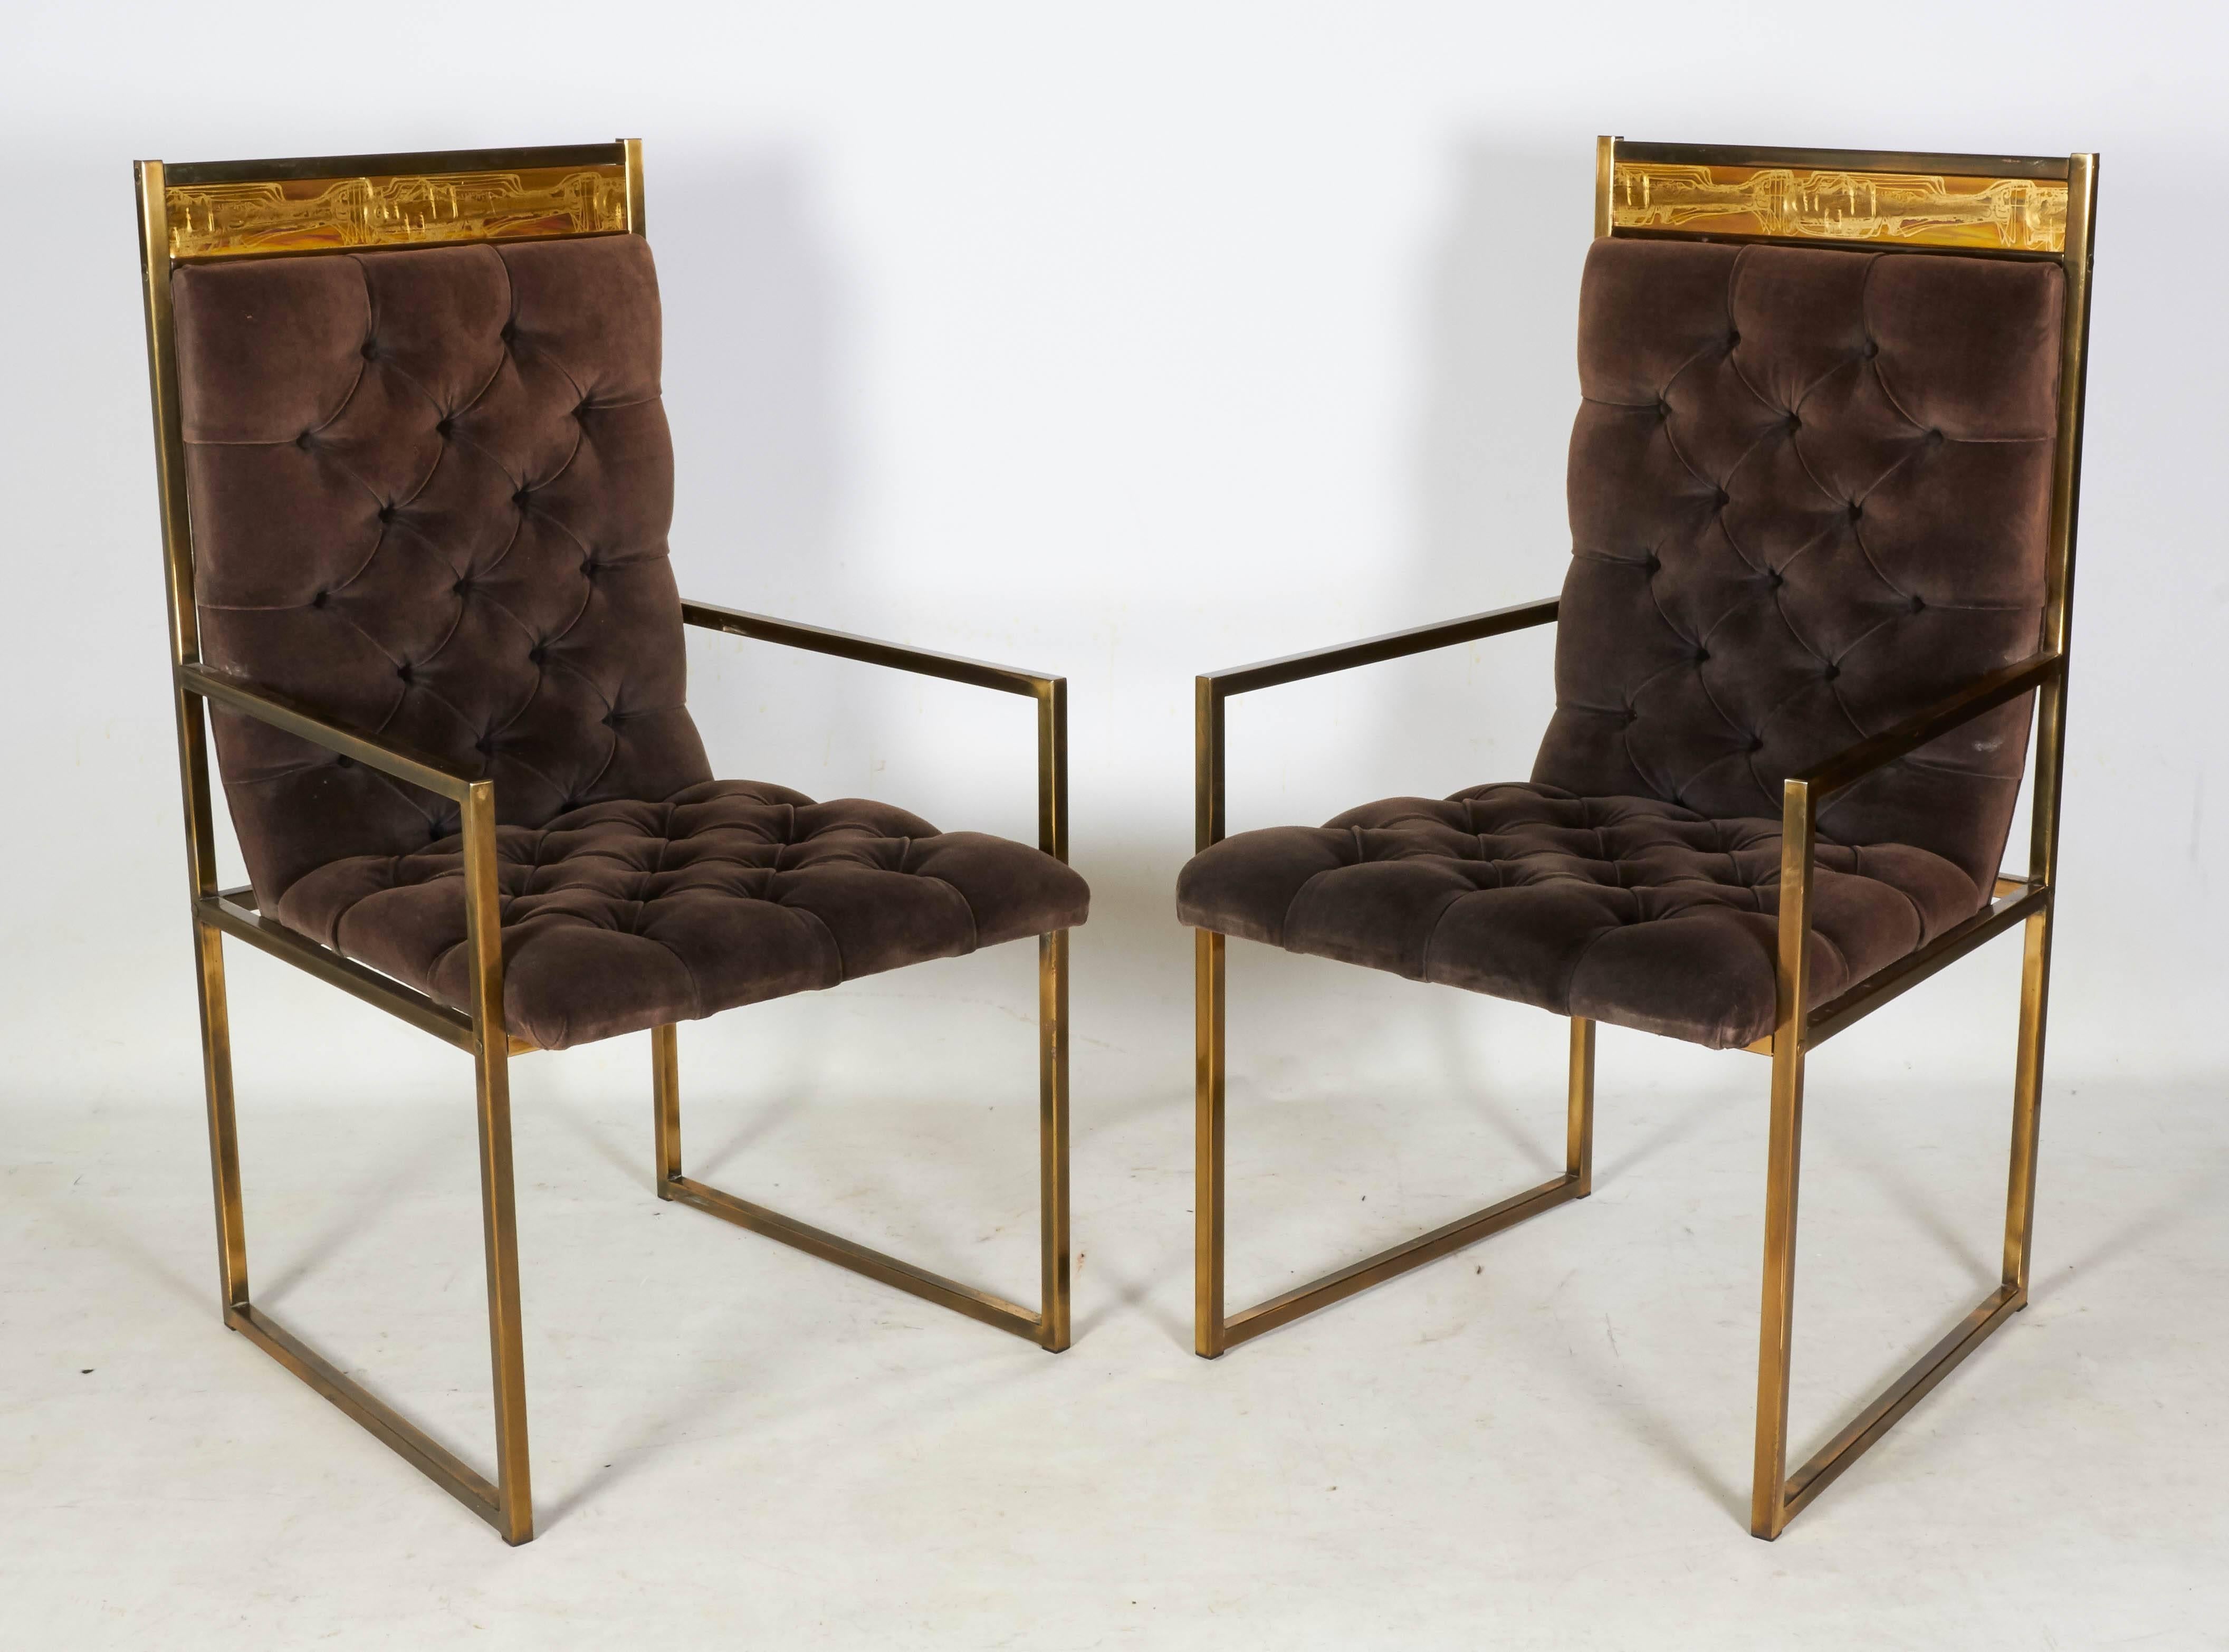 Außergewöhnlicher und sehr seltener Satz von sechs dekorativen modernen Esszimmerstühlen von Bernhard Rohne für Mastercraft. Die Stühle sind aus Messing und mit braunem getuftetem Samt gepolstert. Jeder Stuhl ist mit einer Tafel von Rohnes geätzter